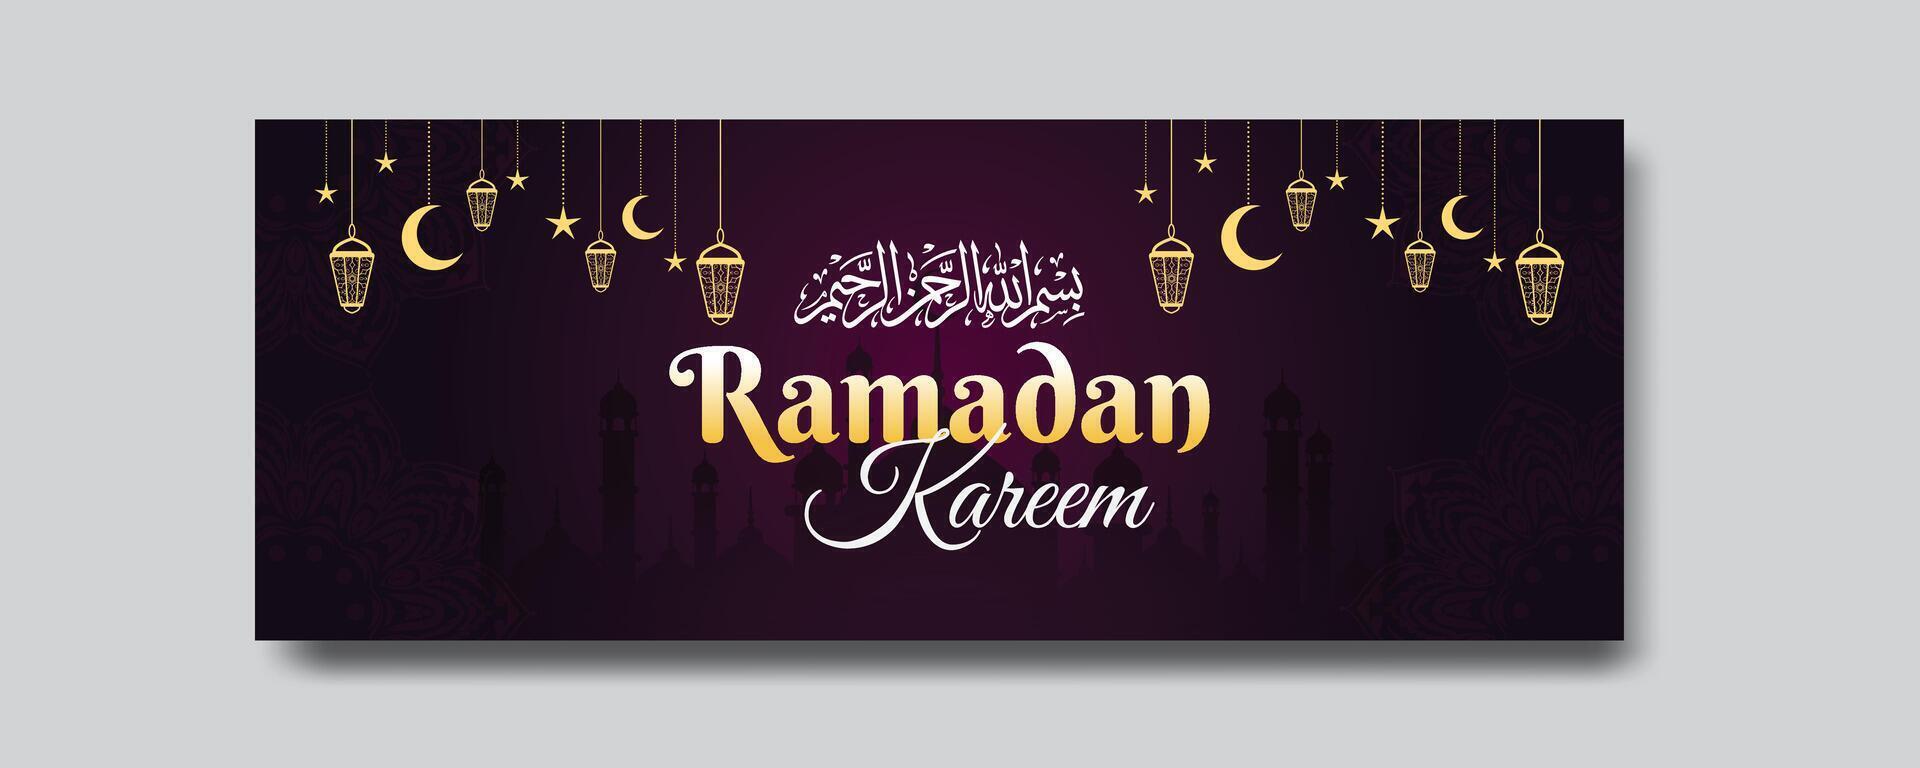 Ramadan karim saluti elegante sociale media bandiera design modello vettore